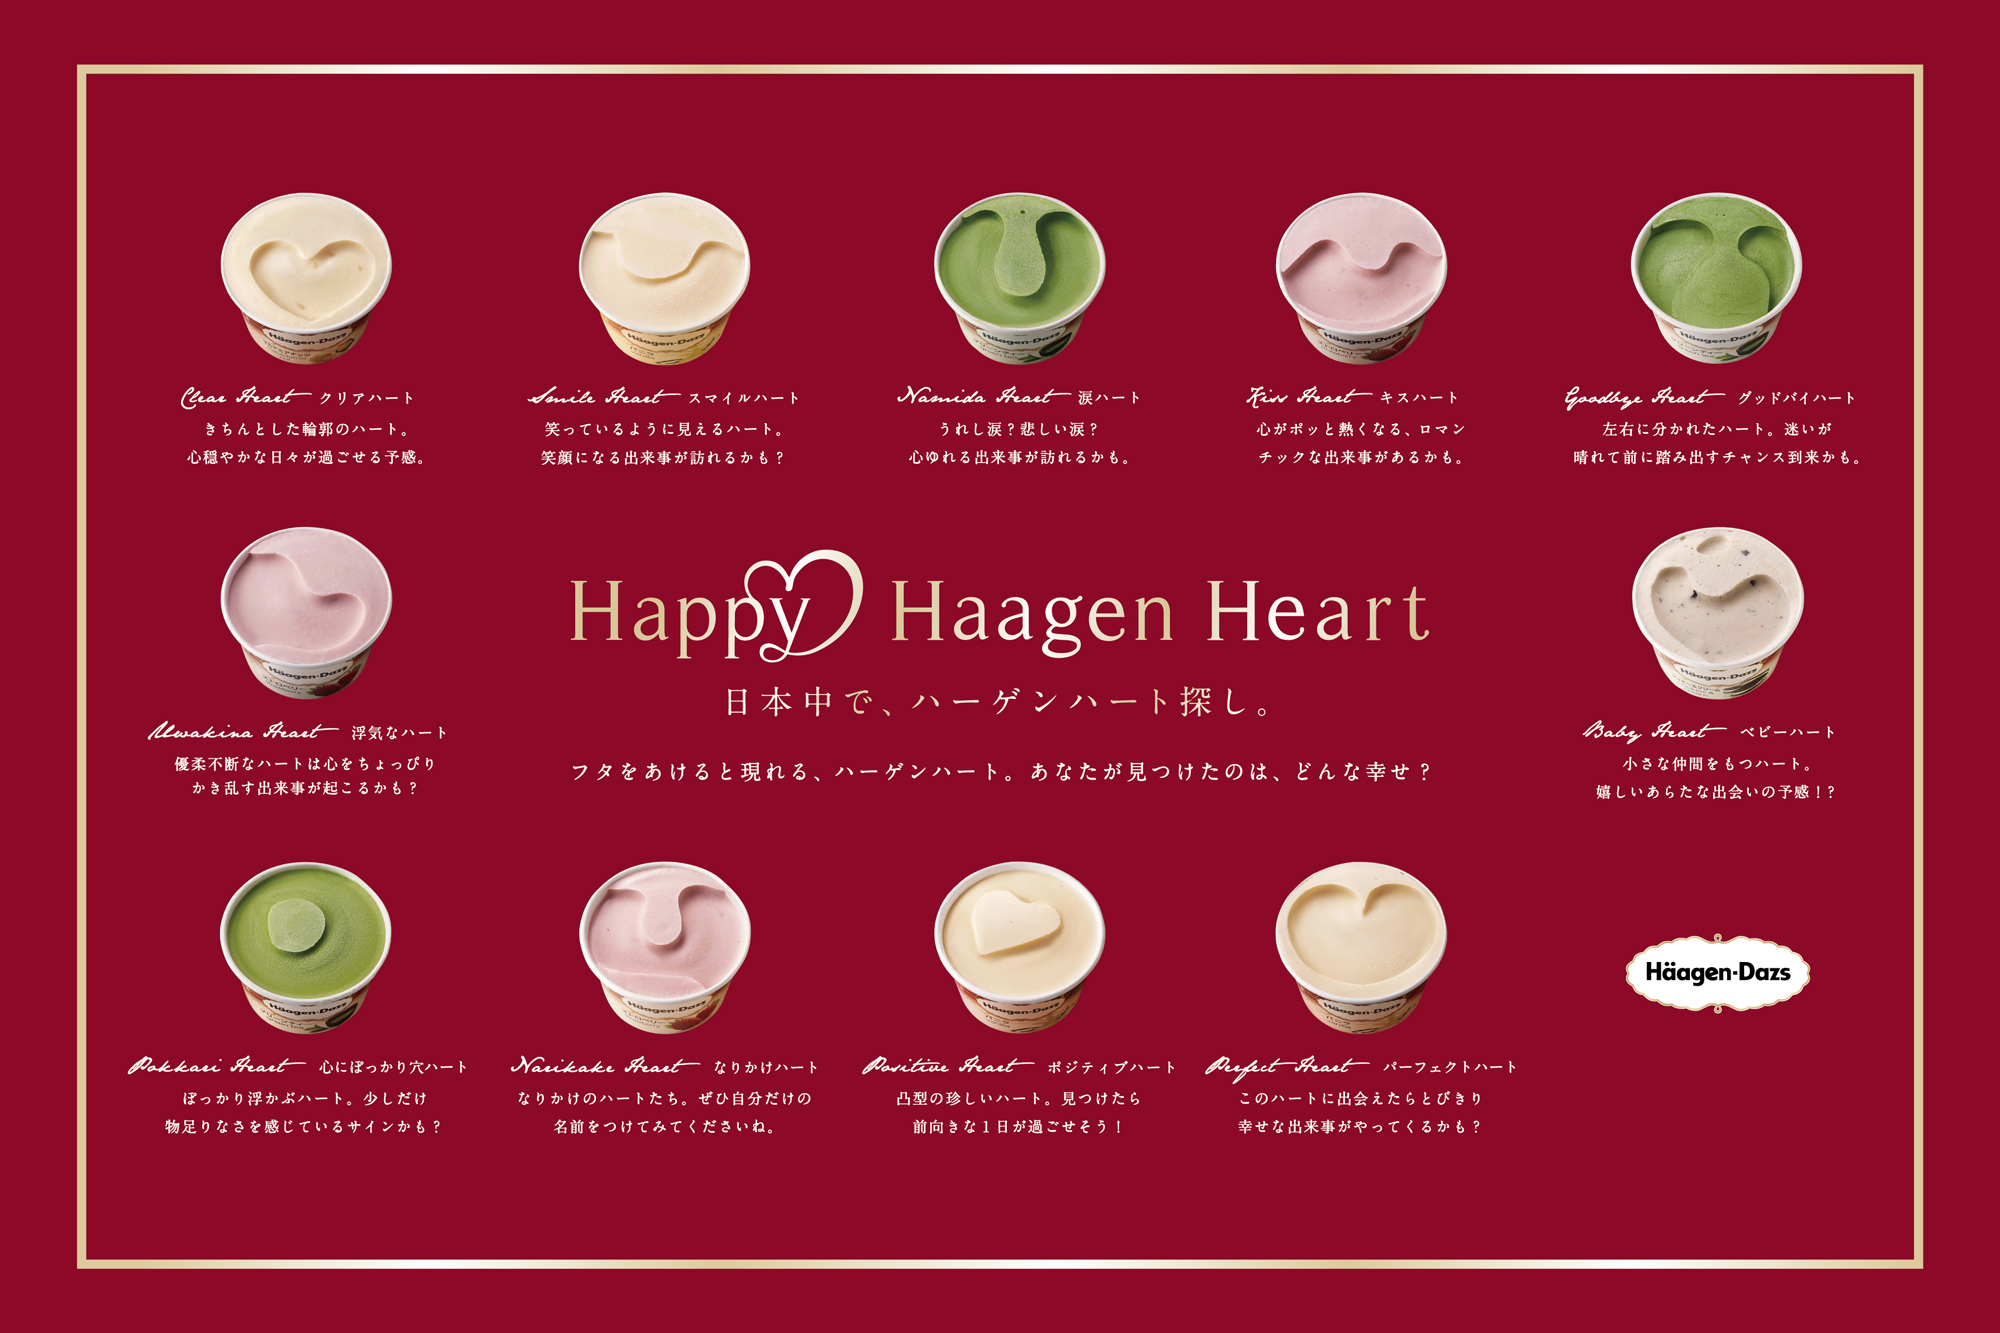 これがハーゲンハート。東京会場では、ハーゲンハートを探して楽しむ「Happy Häagen HeartGallery」が設置されます